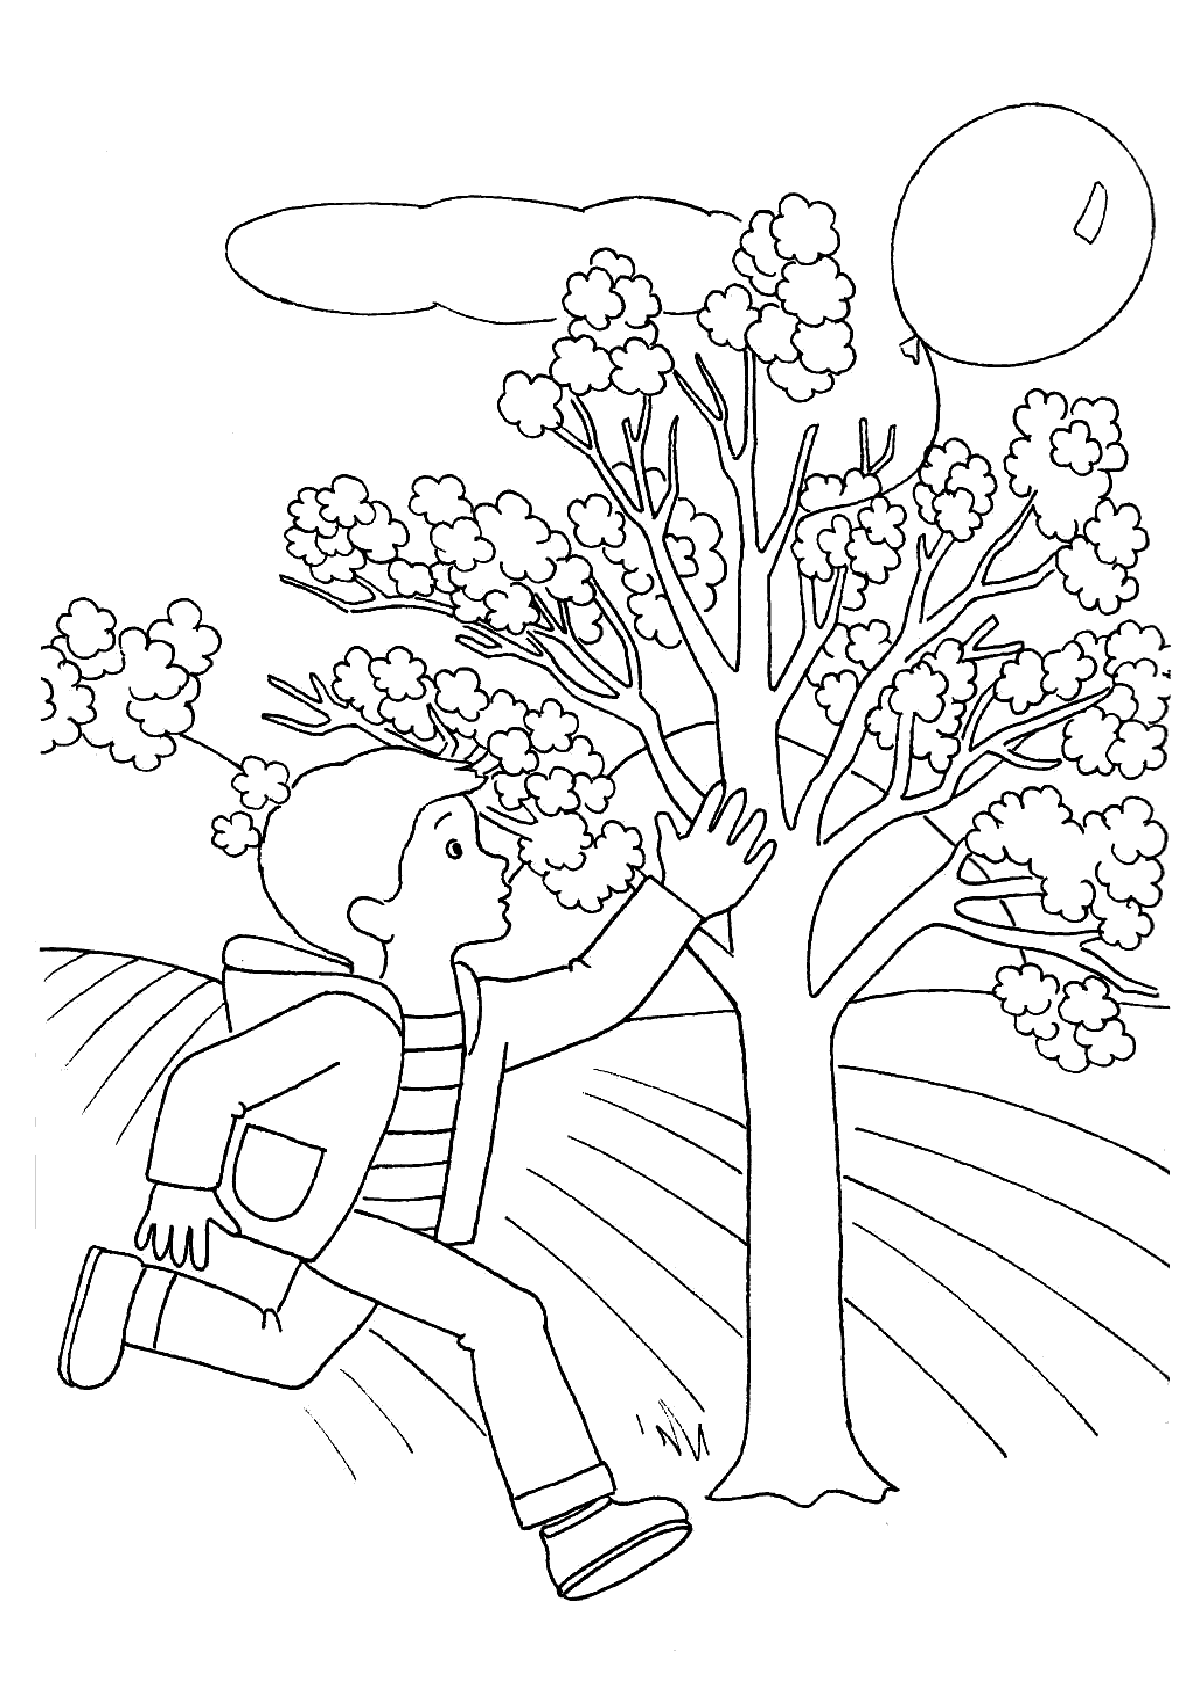 Мальчик бежит возле дерева